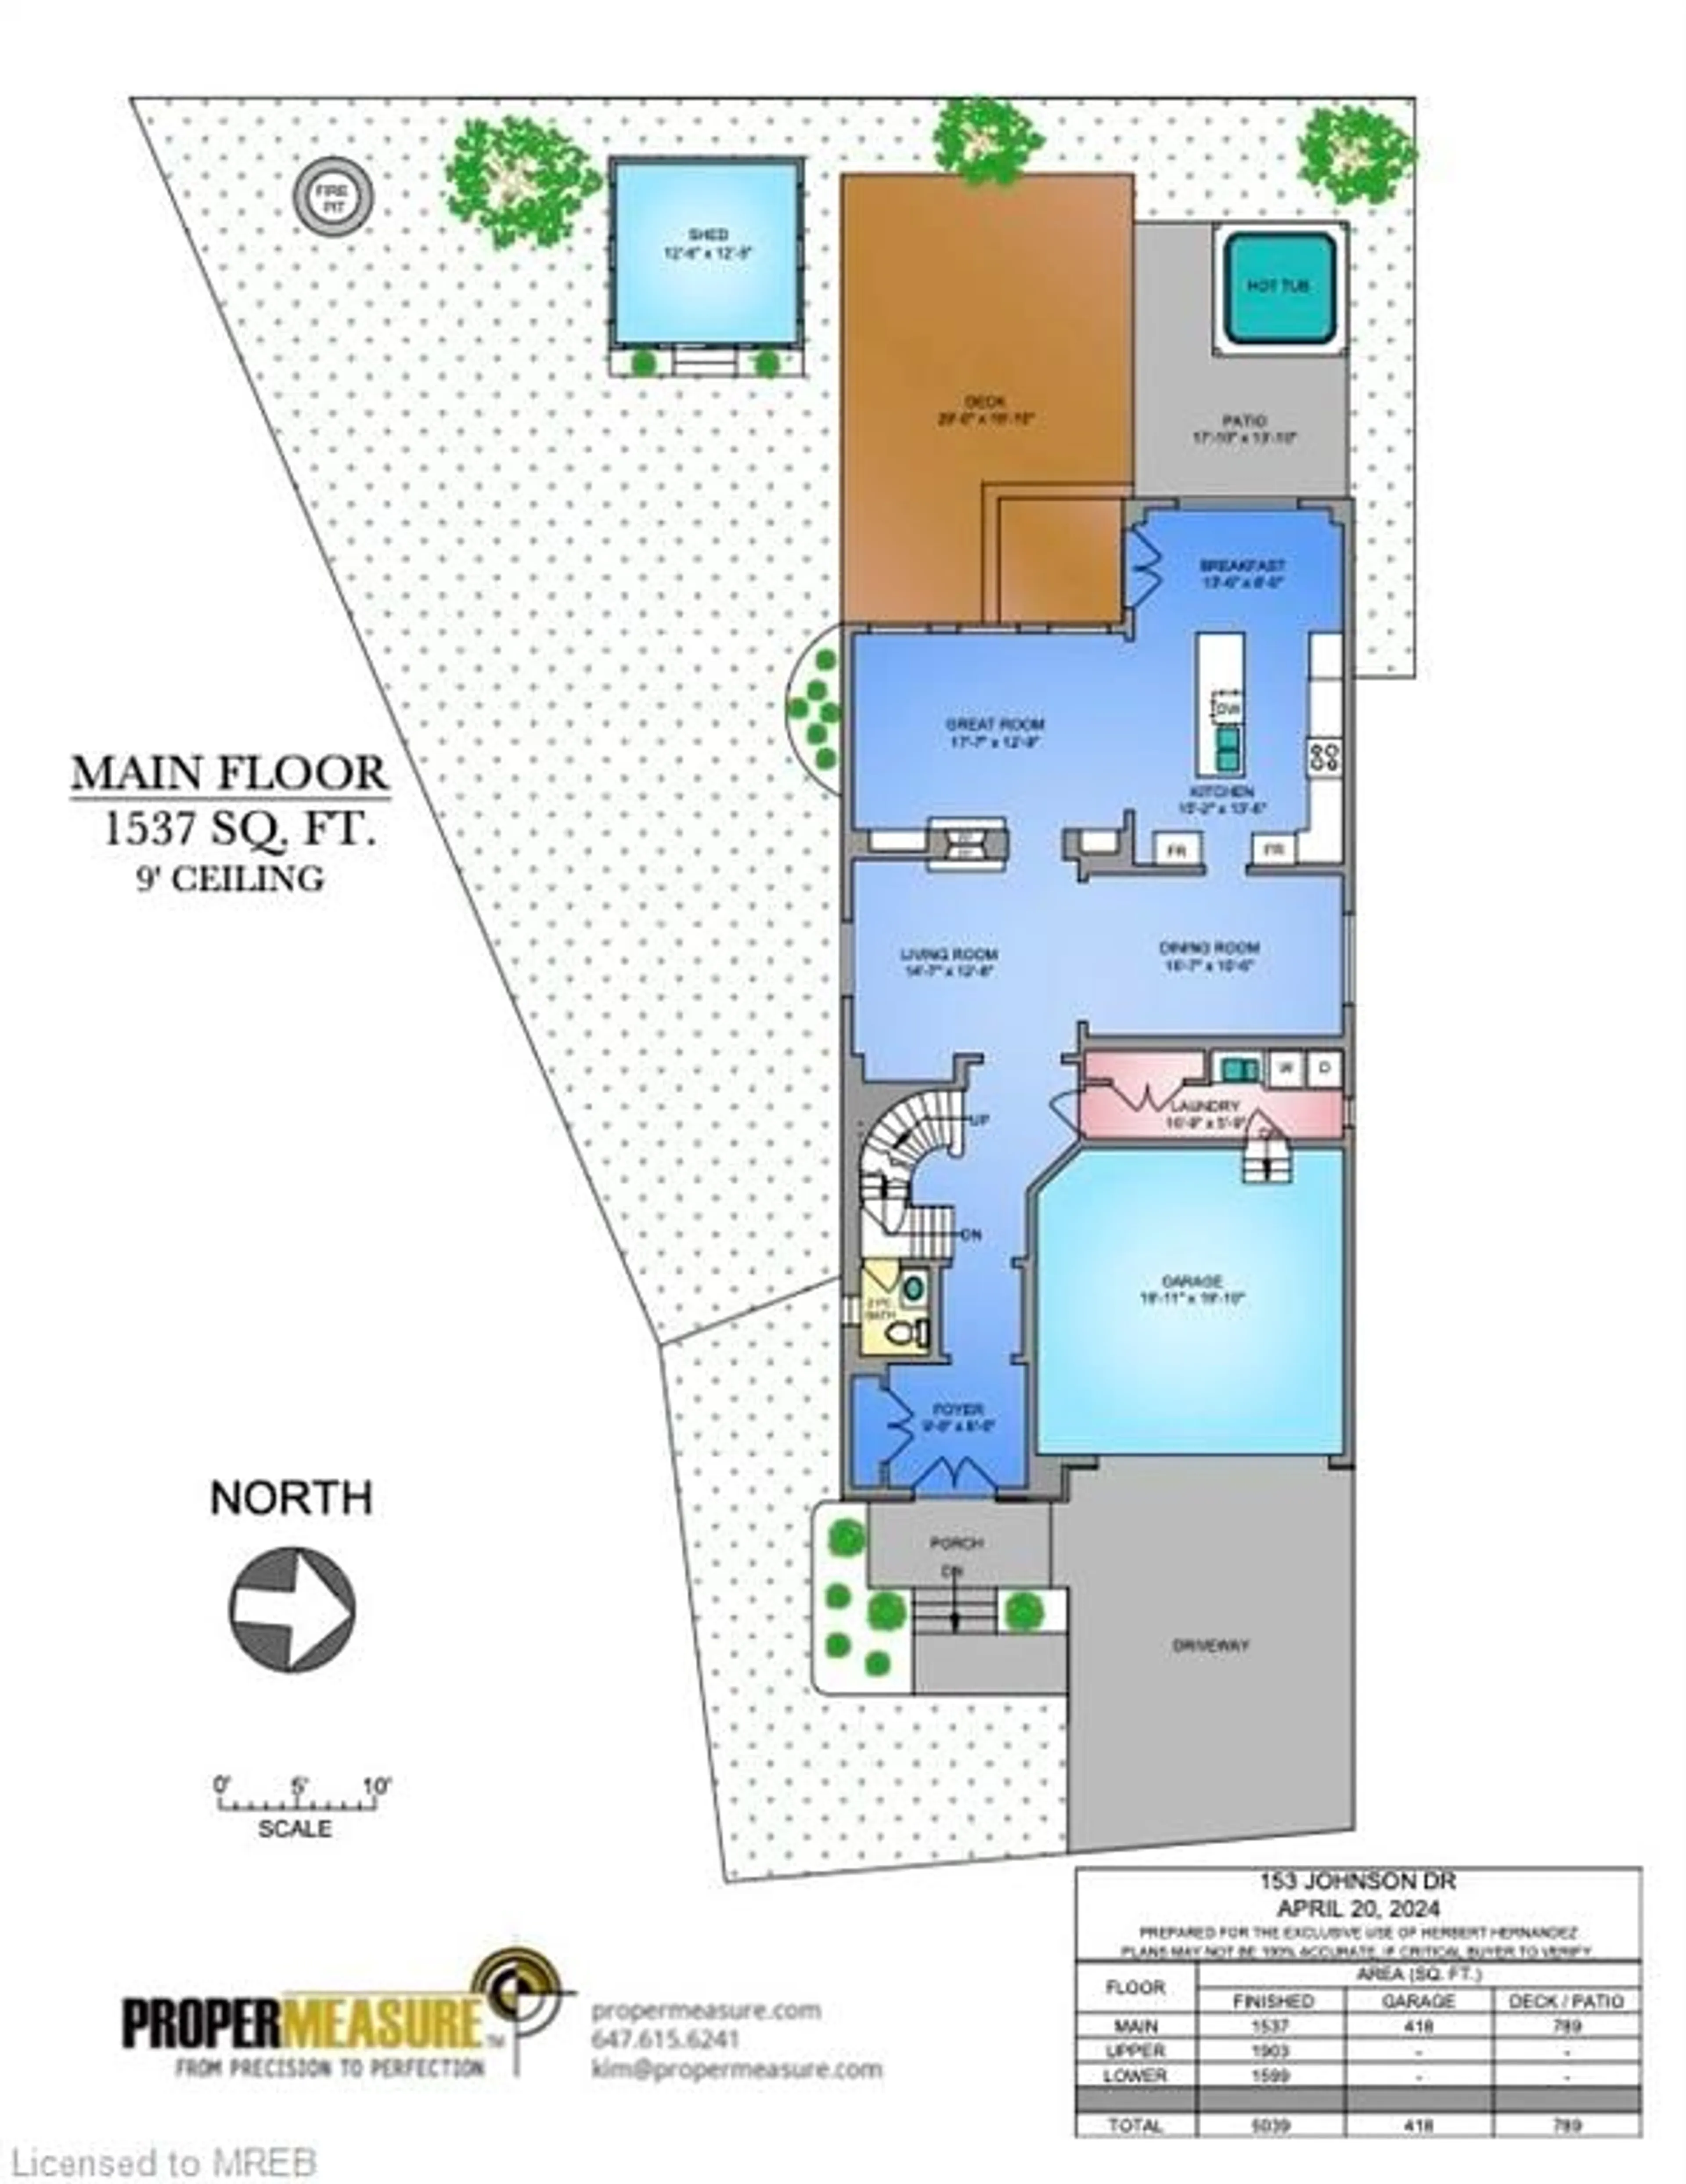 Floor plan for 153 Johnson Dr, Shelburne Ontario L9V 3V8